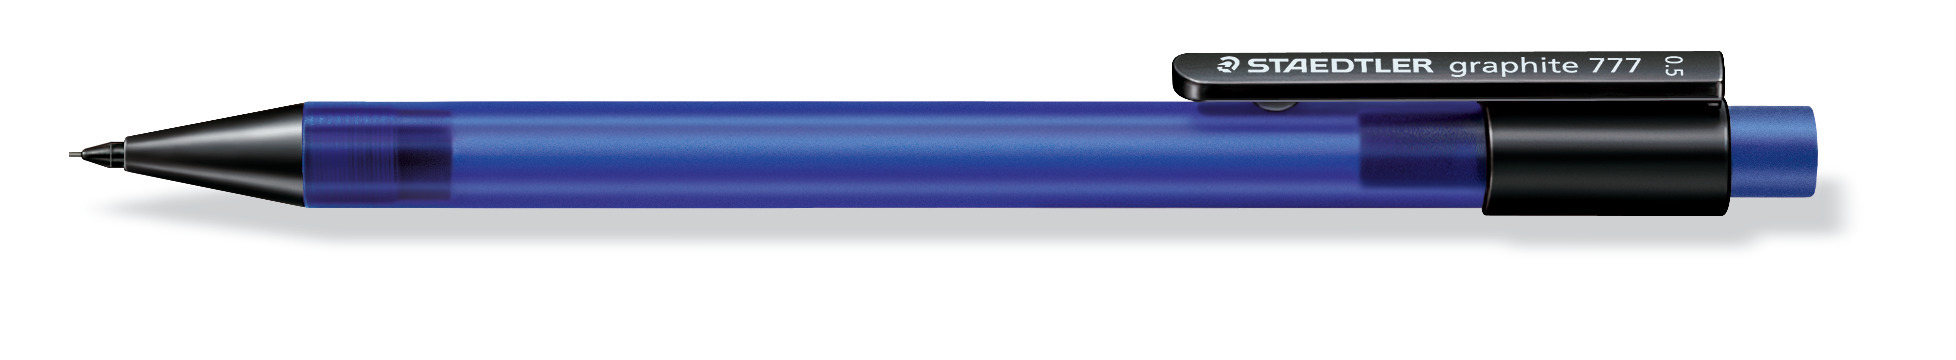 Staedtler Staedtler Vulpotlood Graphite 777 0,3mm blauw